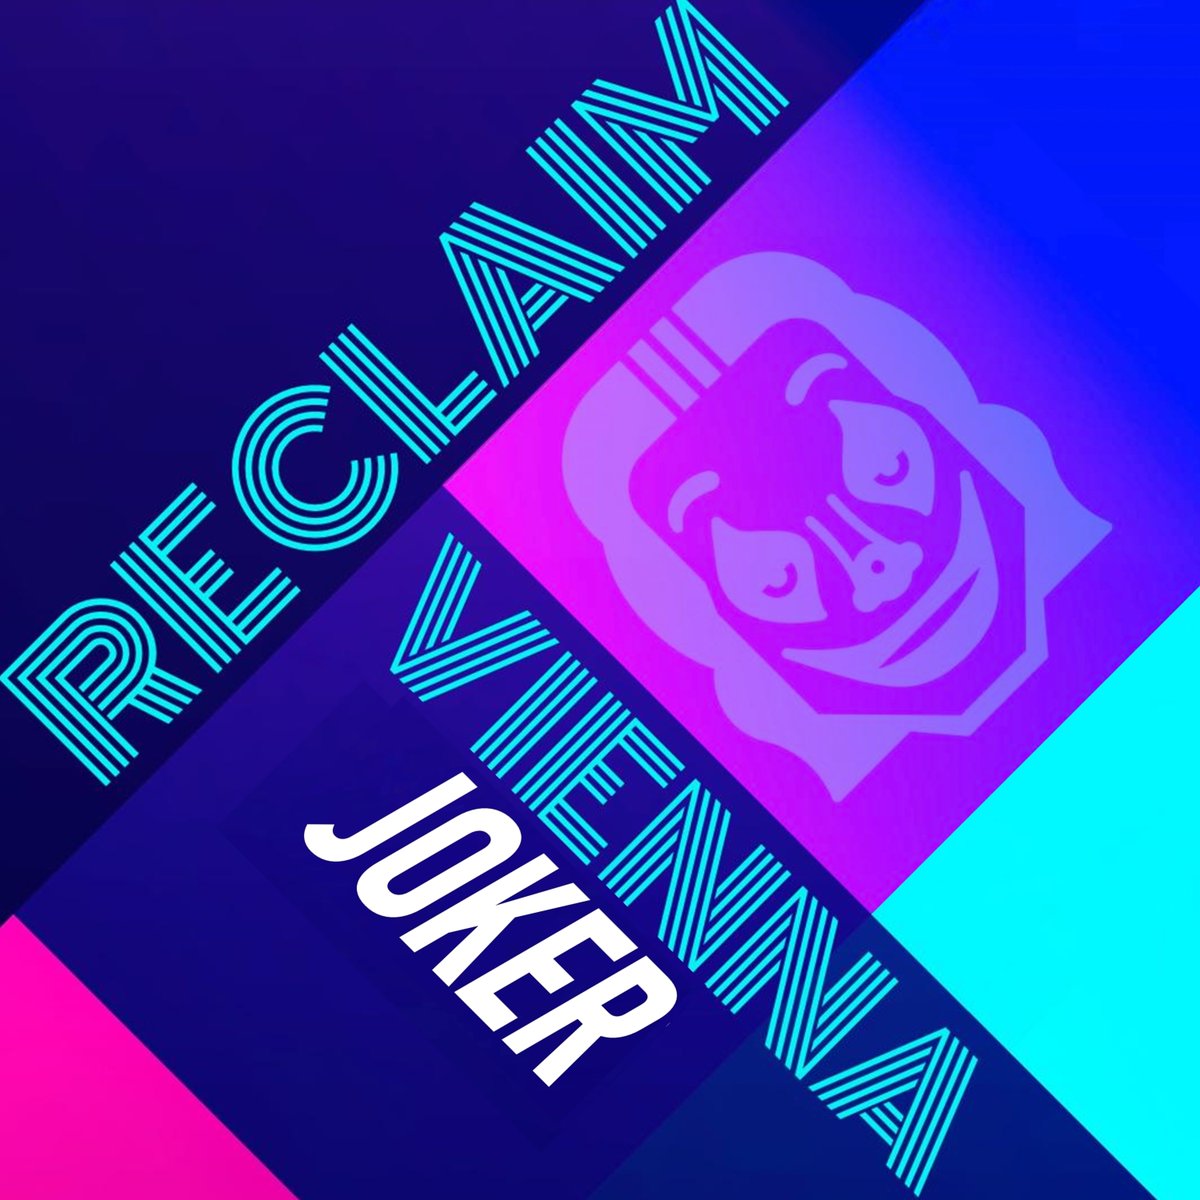 Now Playing - No.1 - Reclaim Vienna - Joker @ReclaimV